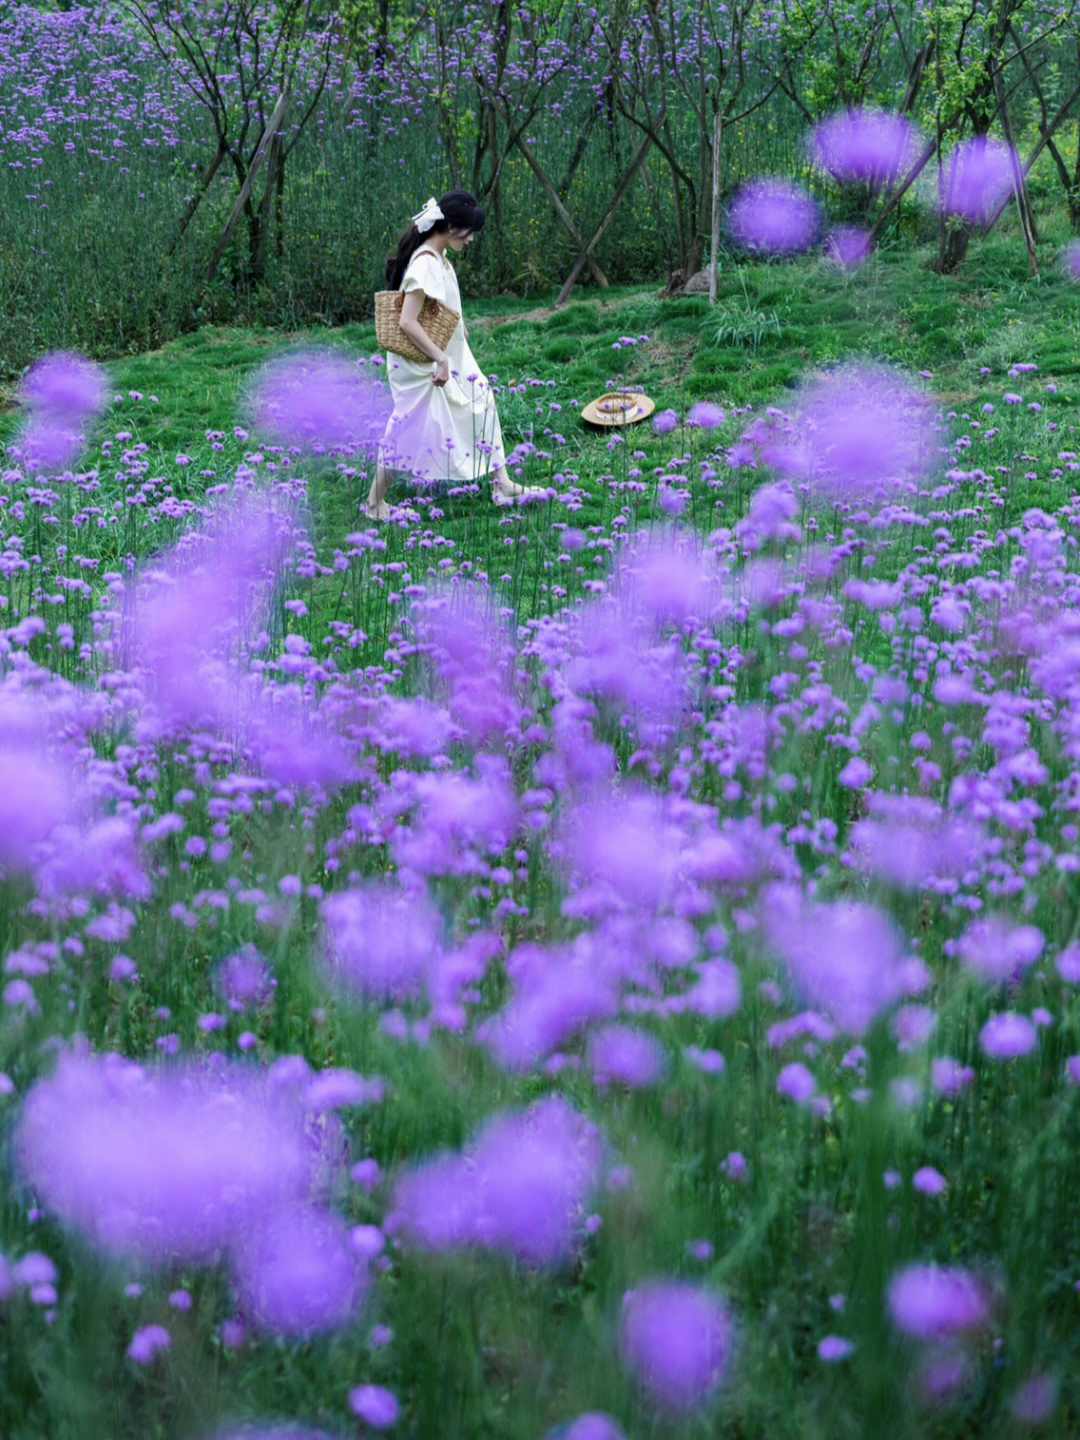 簇拥在一起的紫色花朵随风荡漾漫步其中让人仿佛置身普罗旺斯梦幻又浪